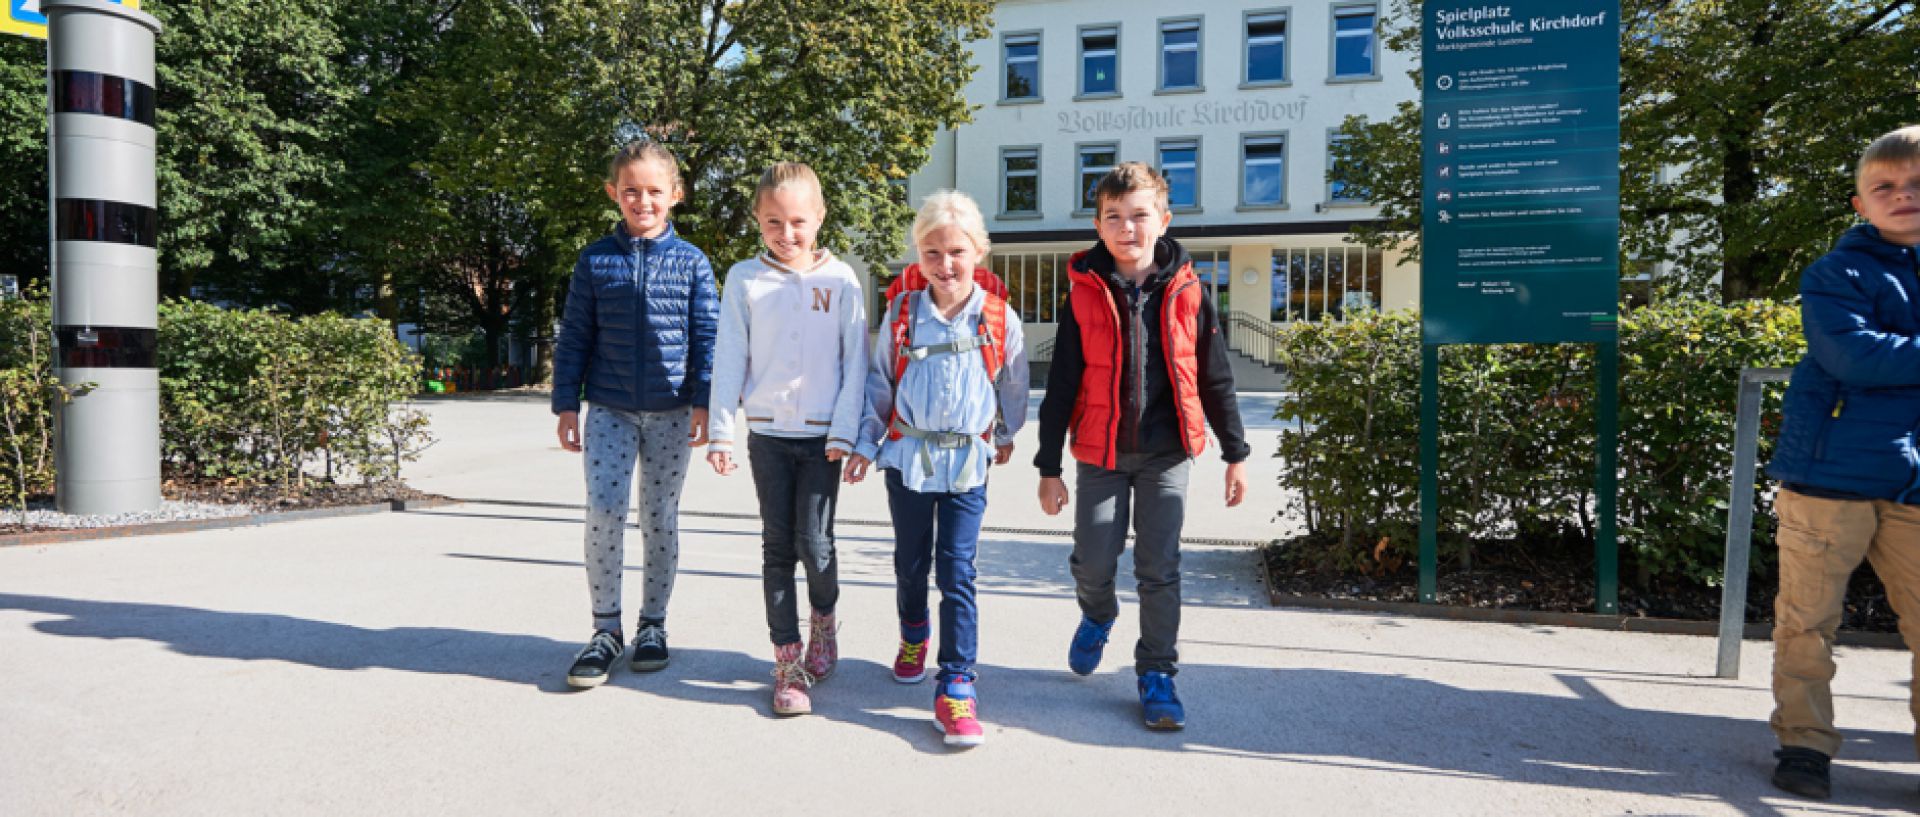 Sicher unterwegs mit Kinderanhängern - Mobilitätsverbünde Österreich